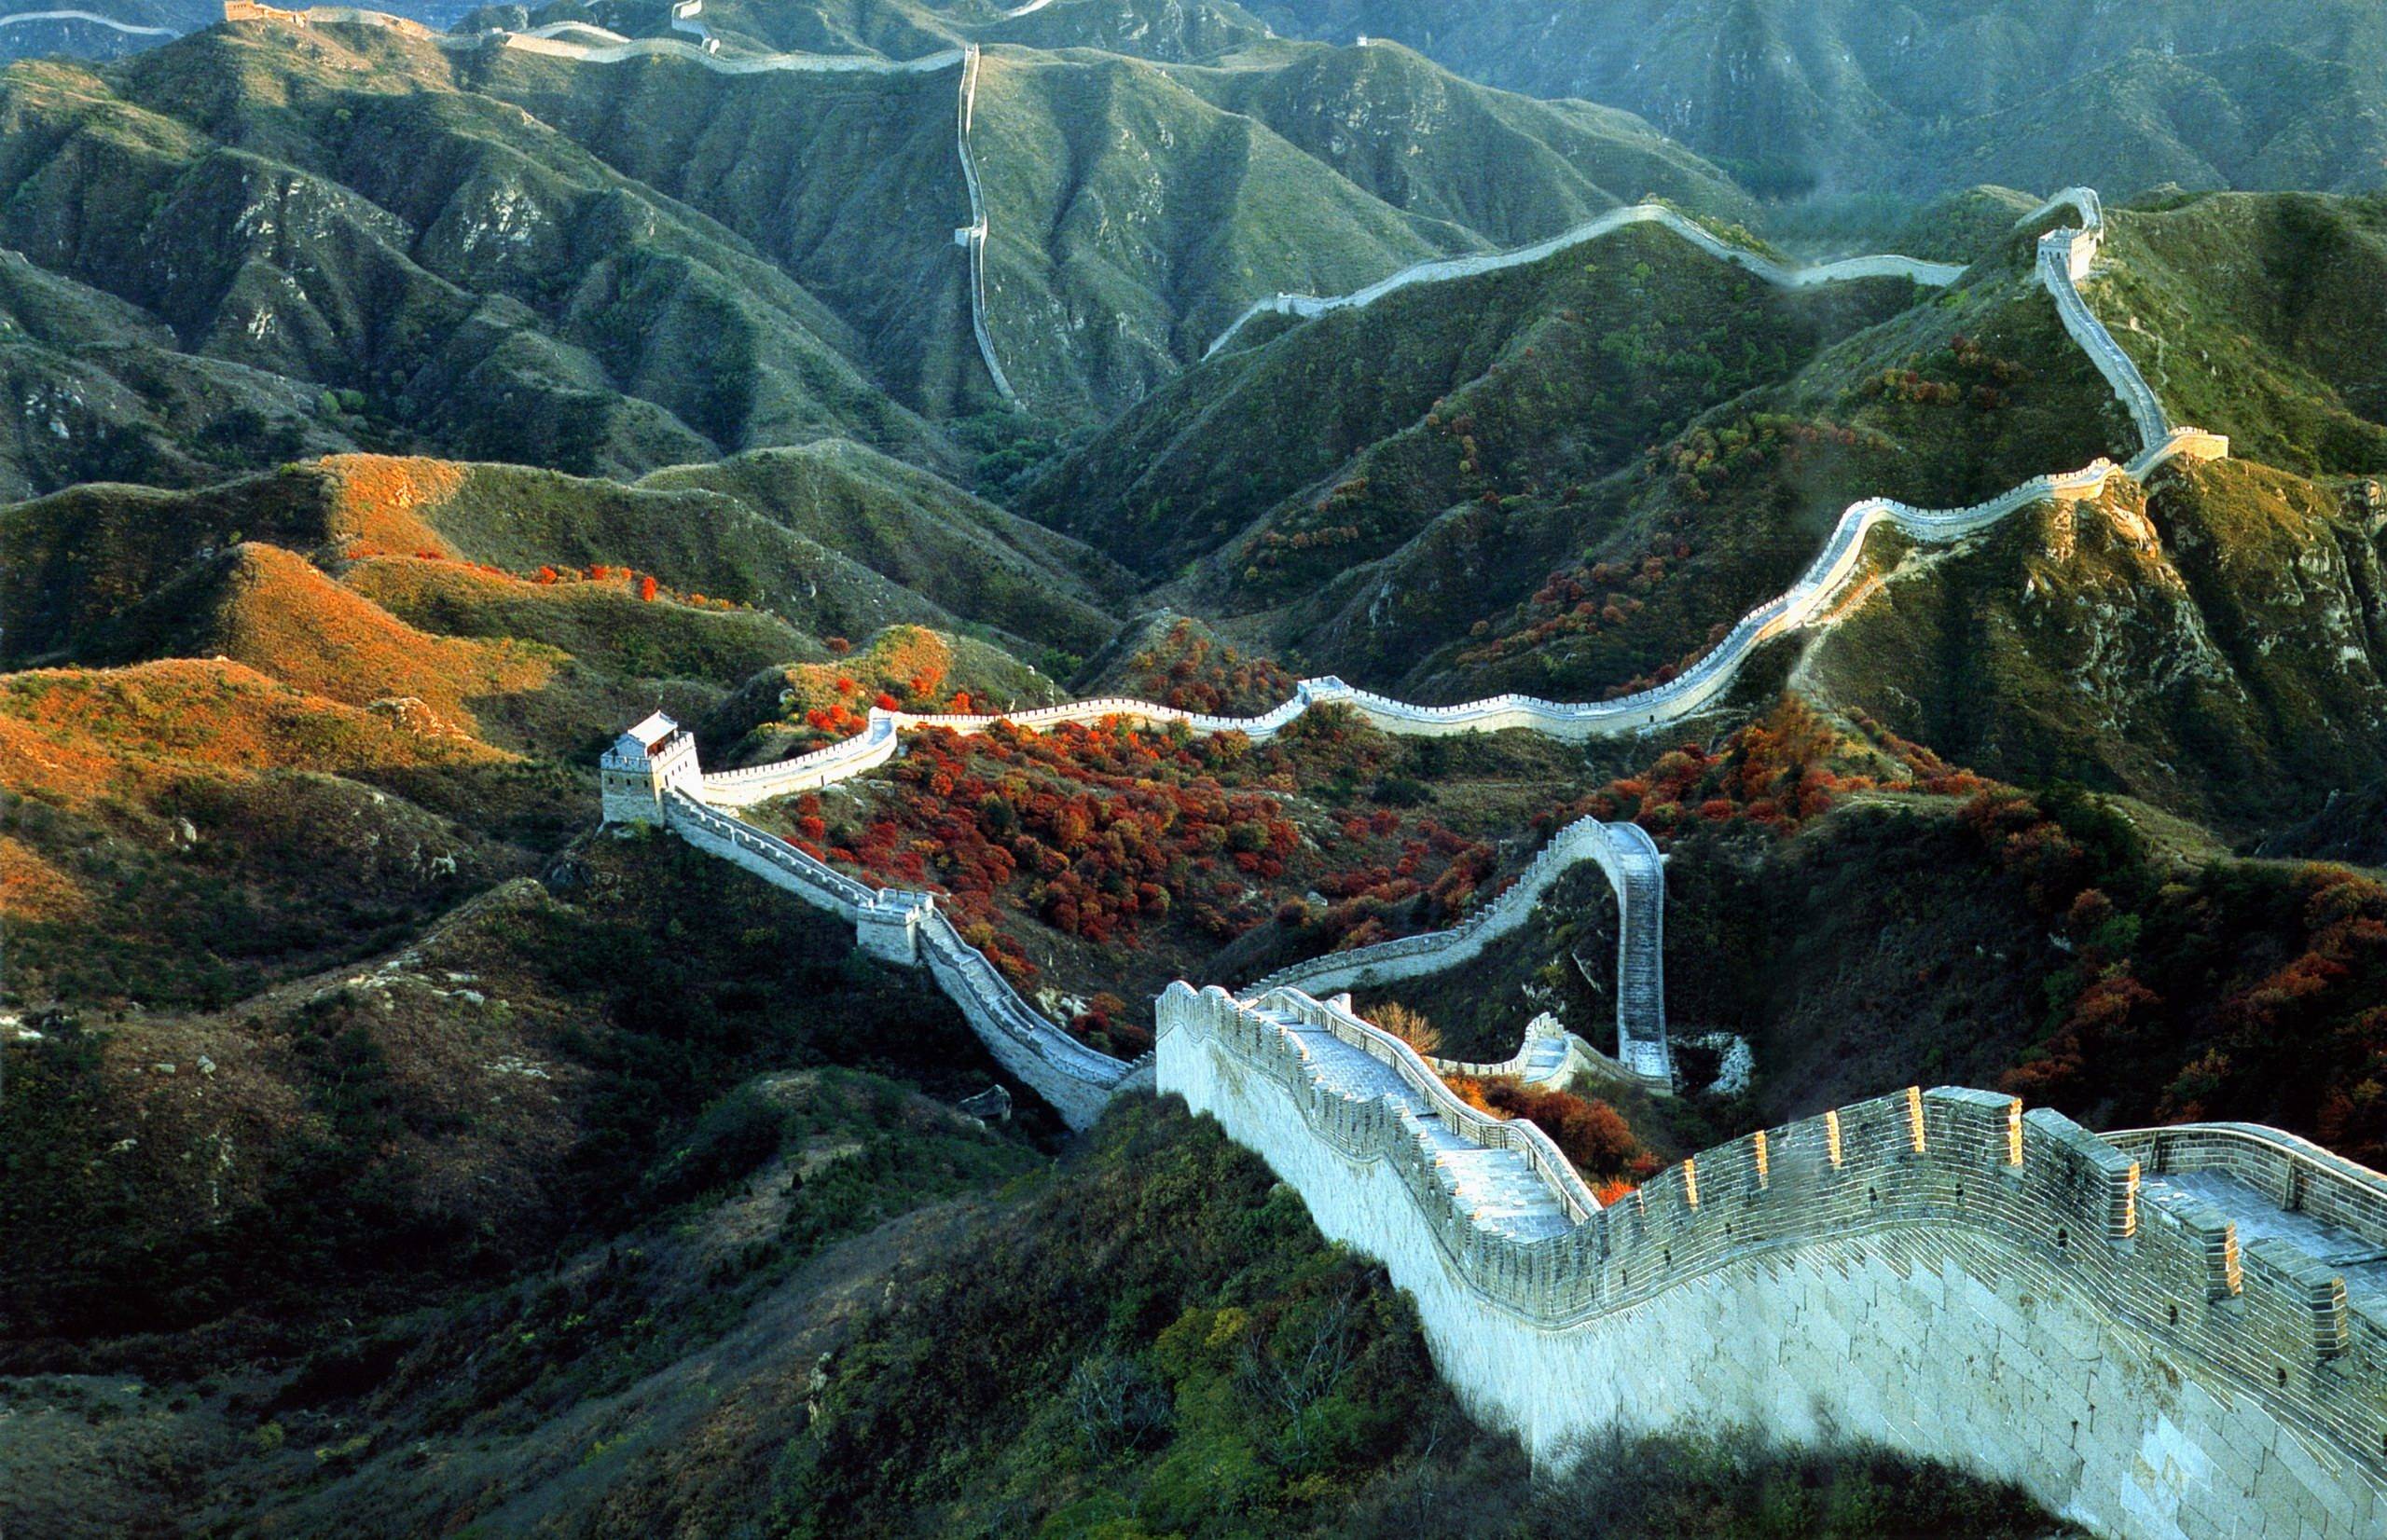 Badaling Great Wall China Wallpaper Px Free Download Wall Of